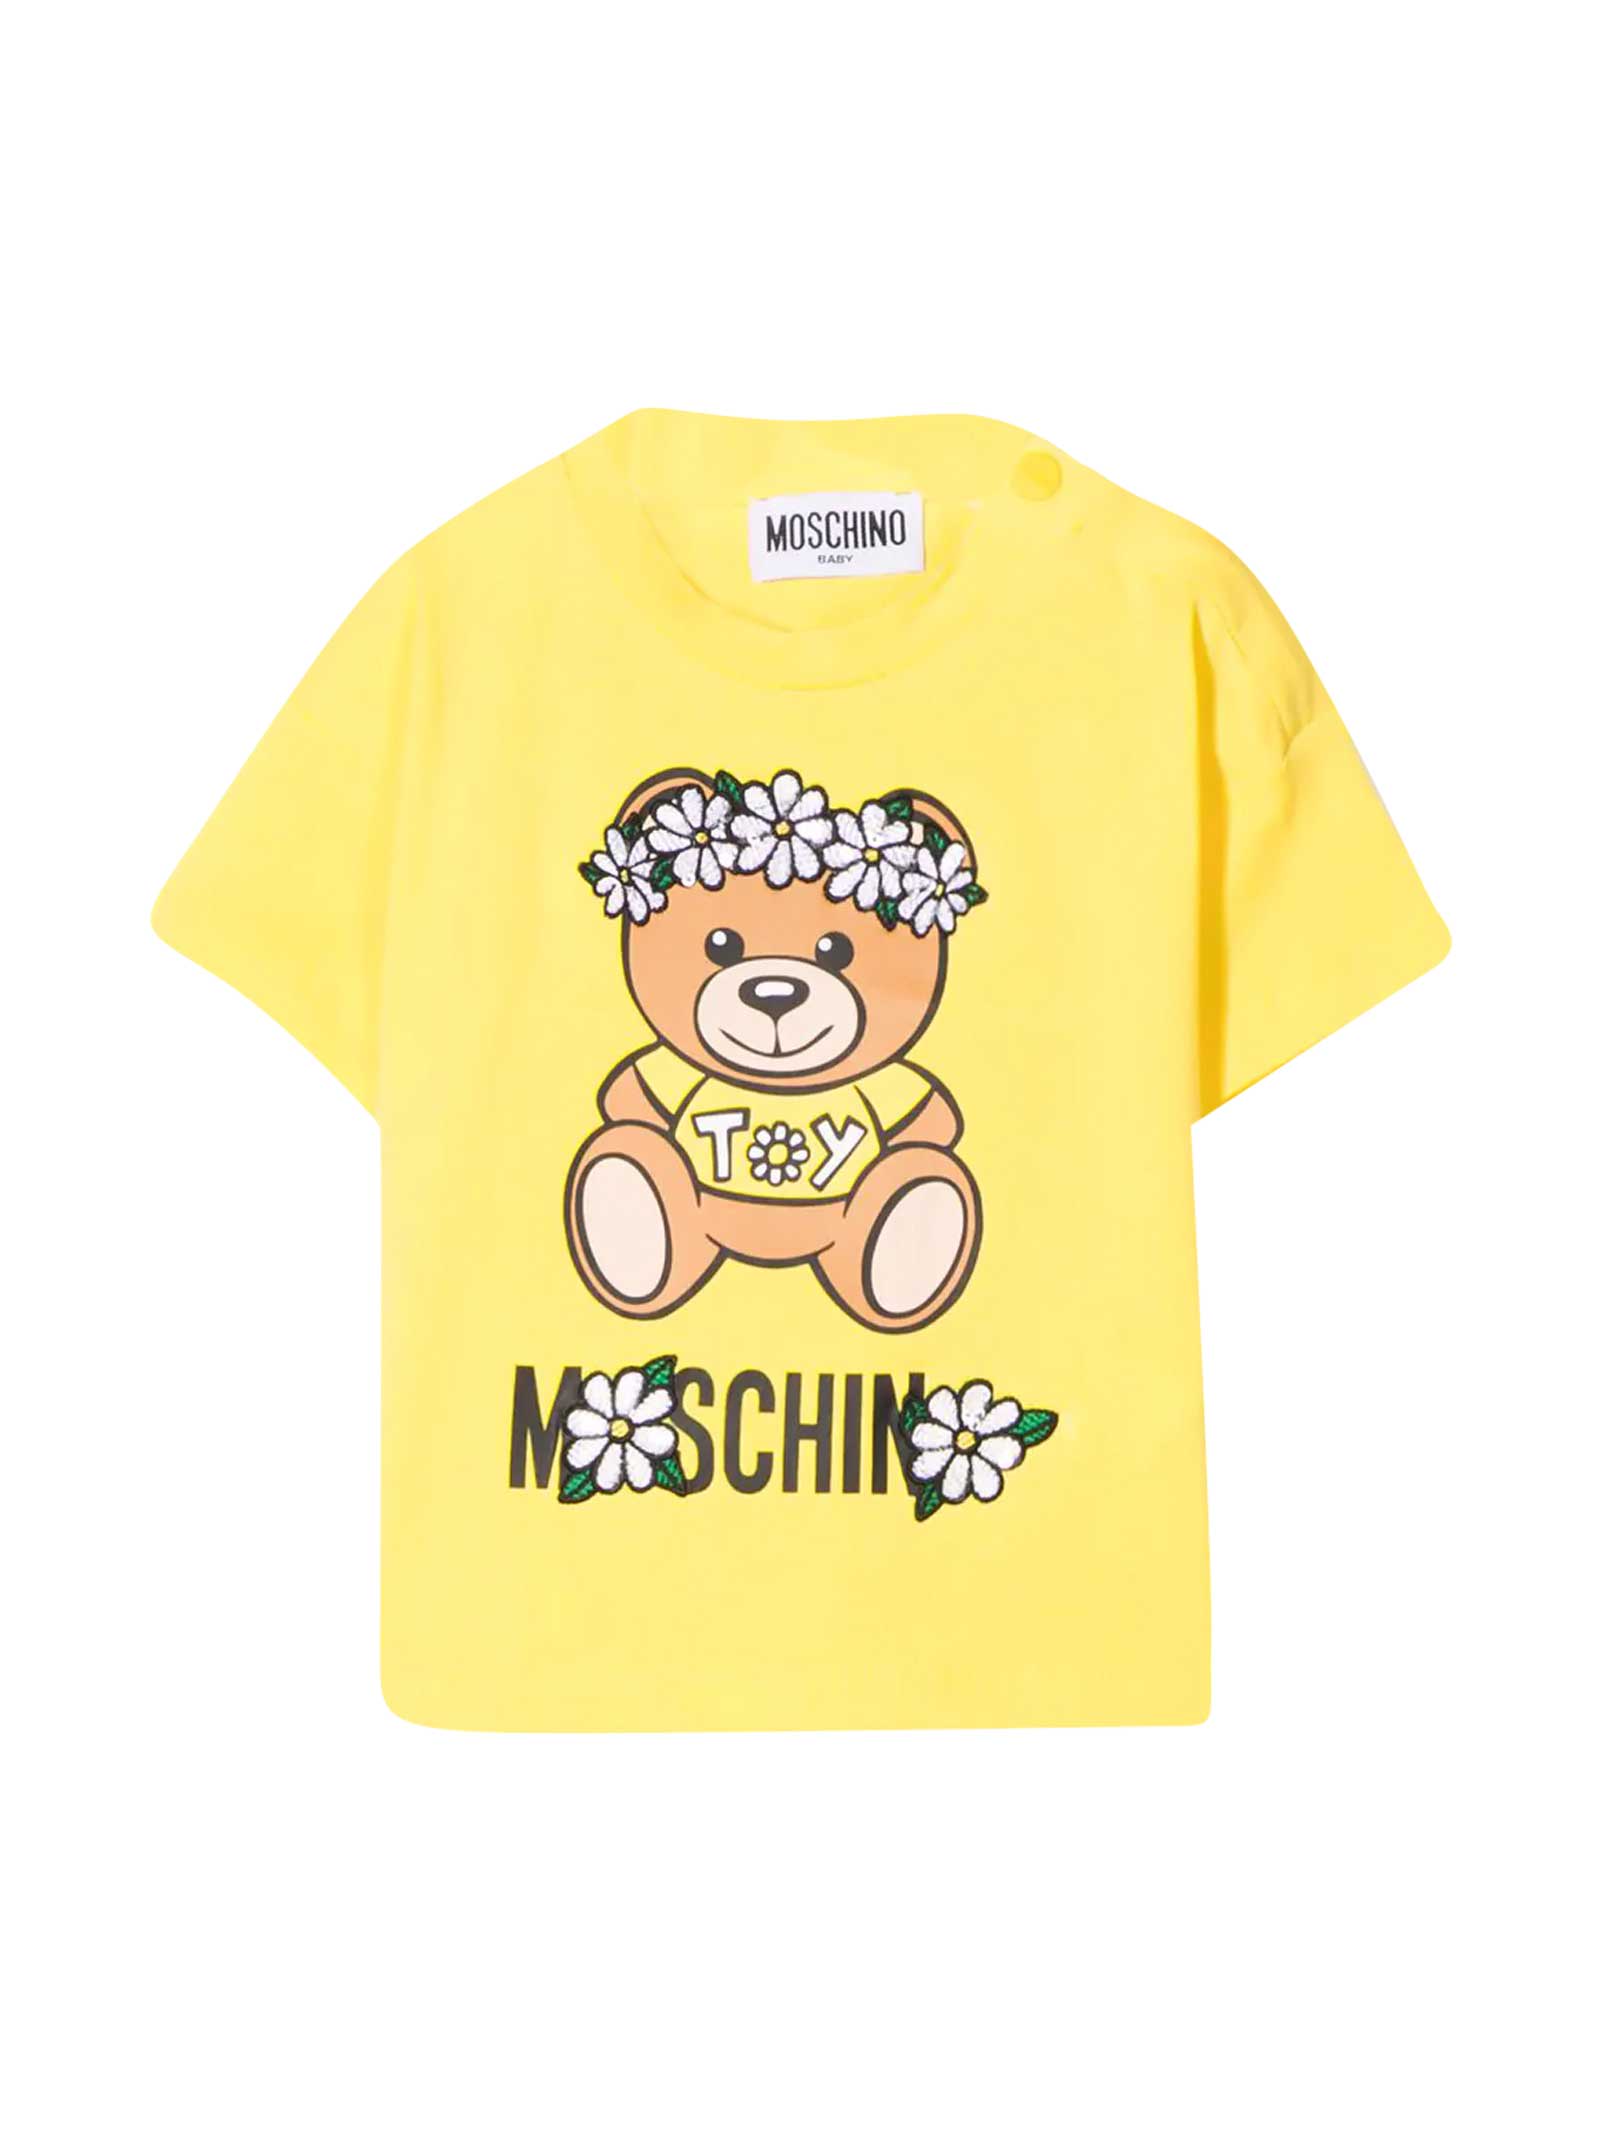 Moschino Babies' Newborn Yellow T-shirt In Giallo